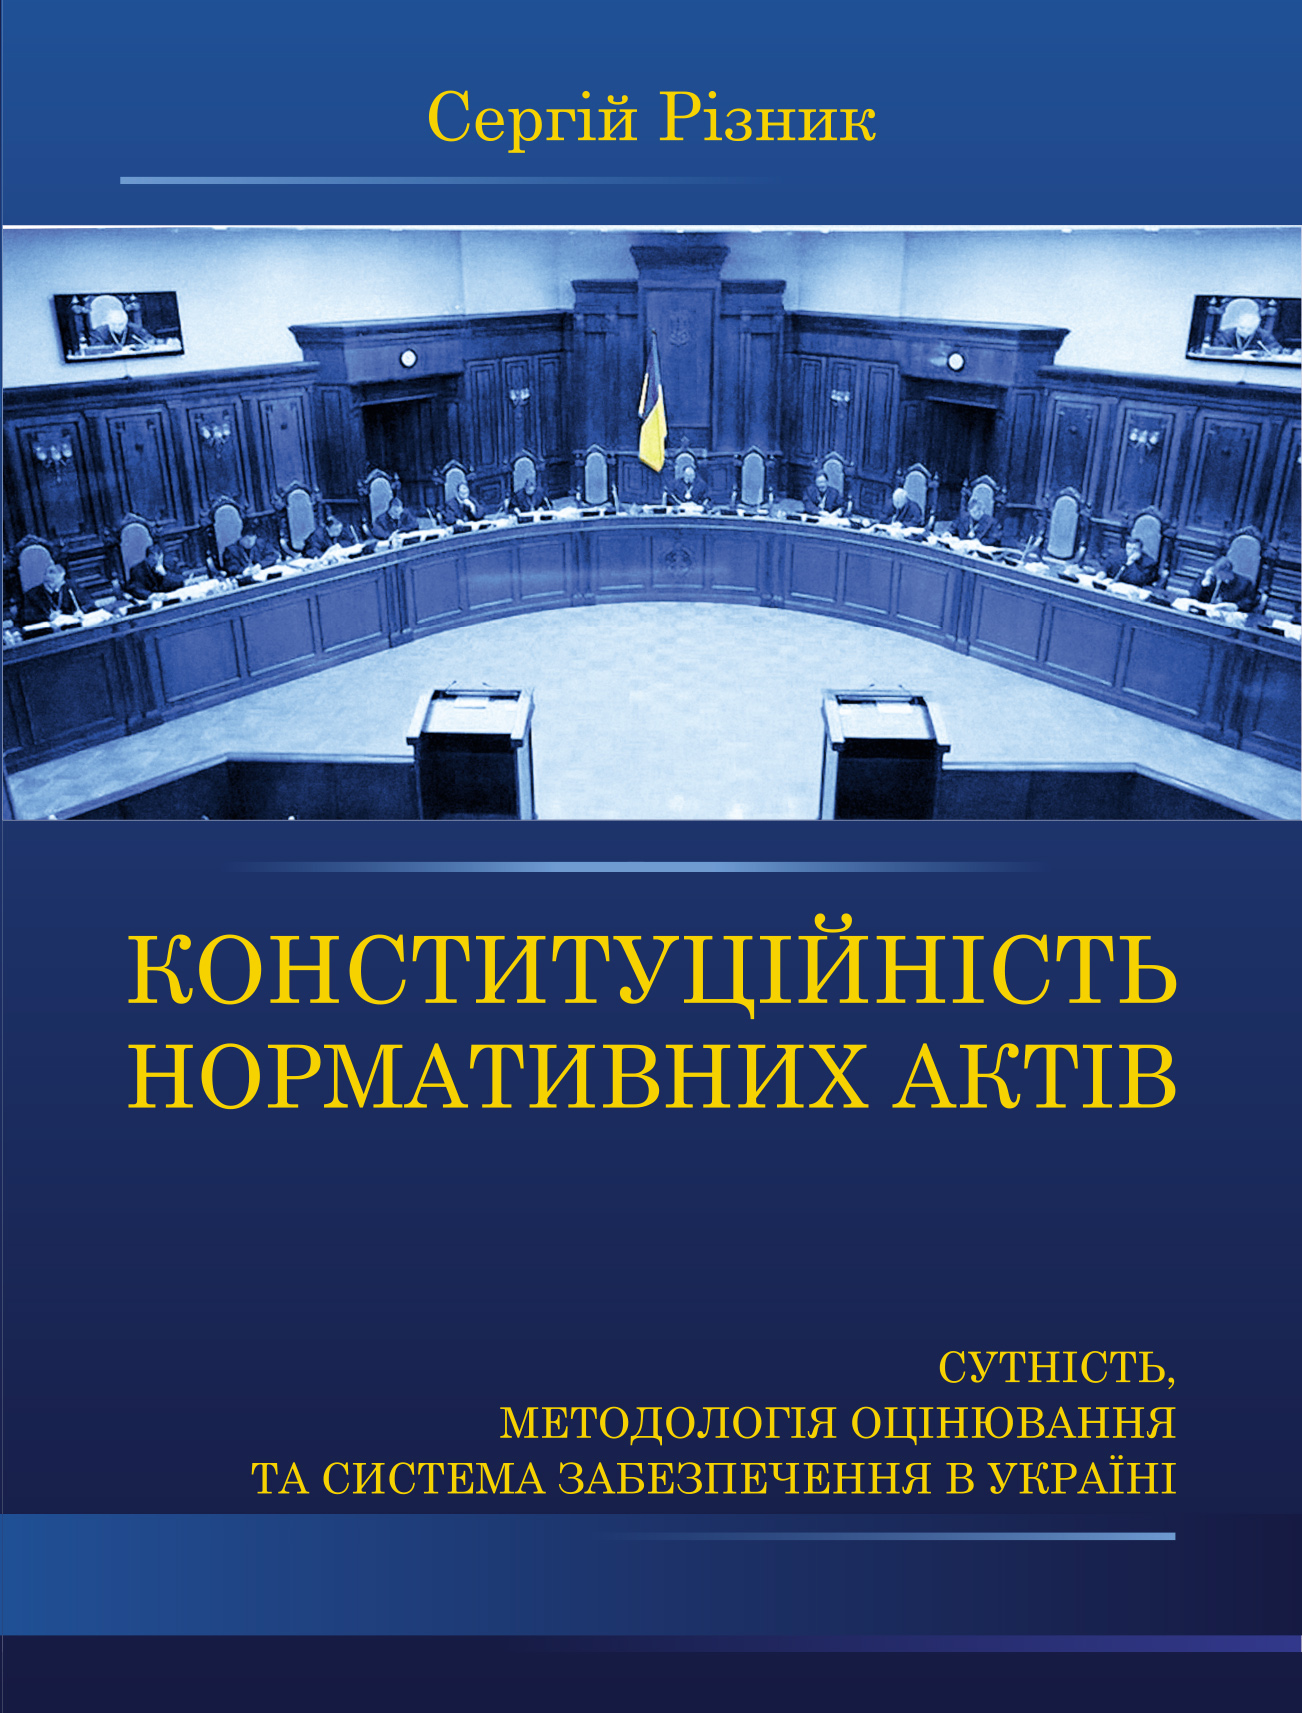 Конституційність нормативних актів: сутність, методологія оцінювання та система забезпечення в Україні